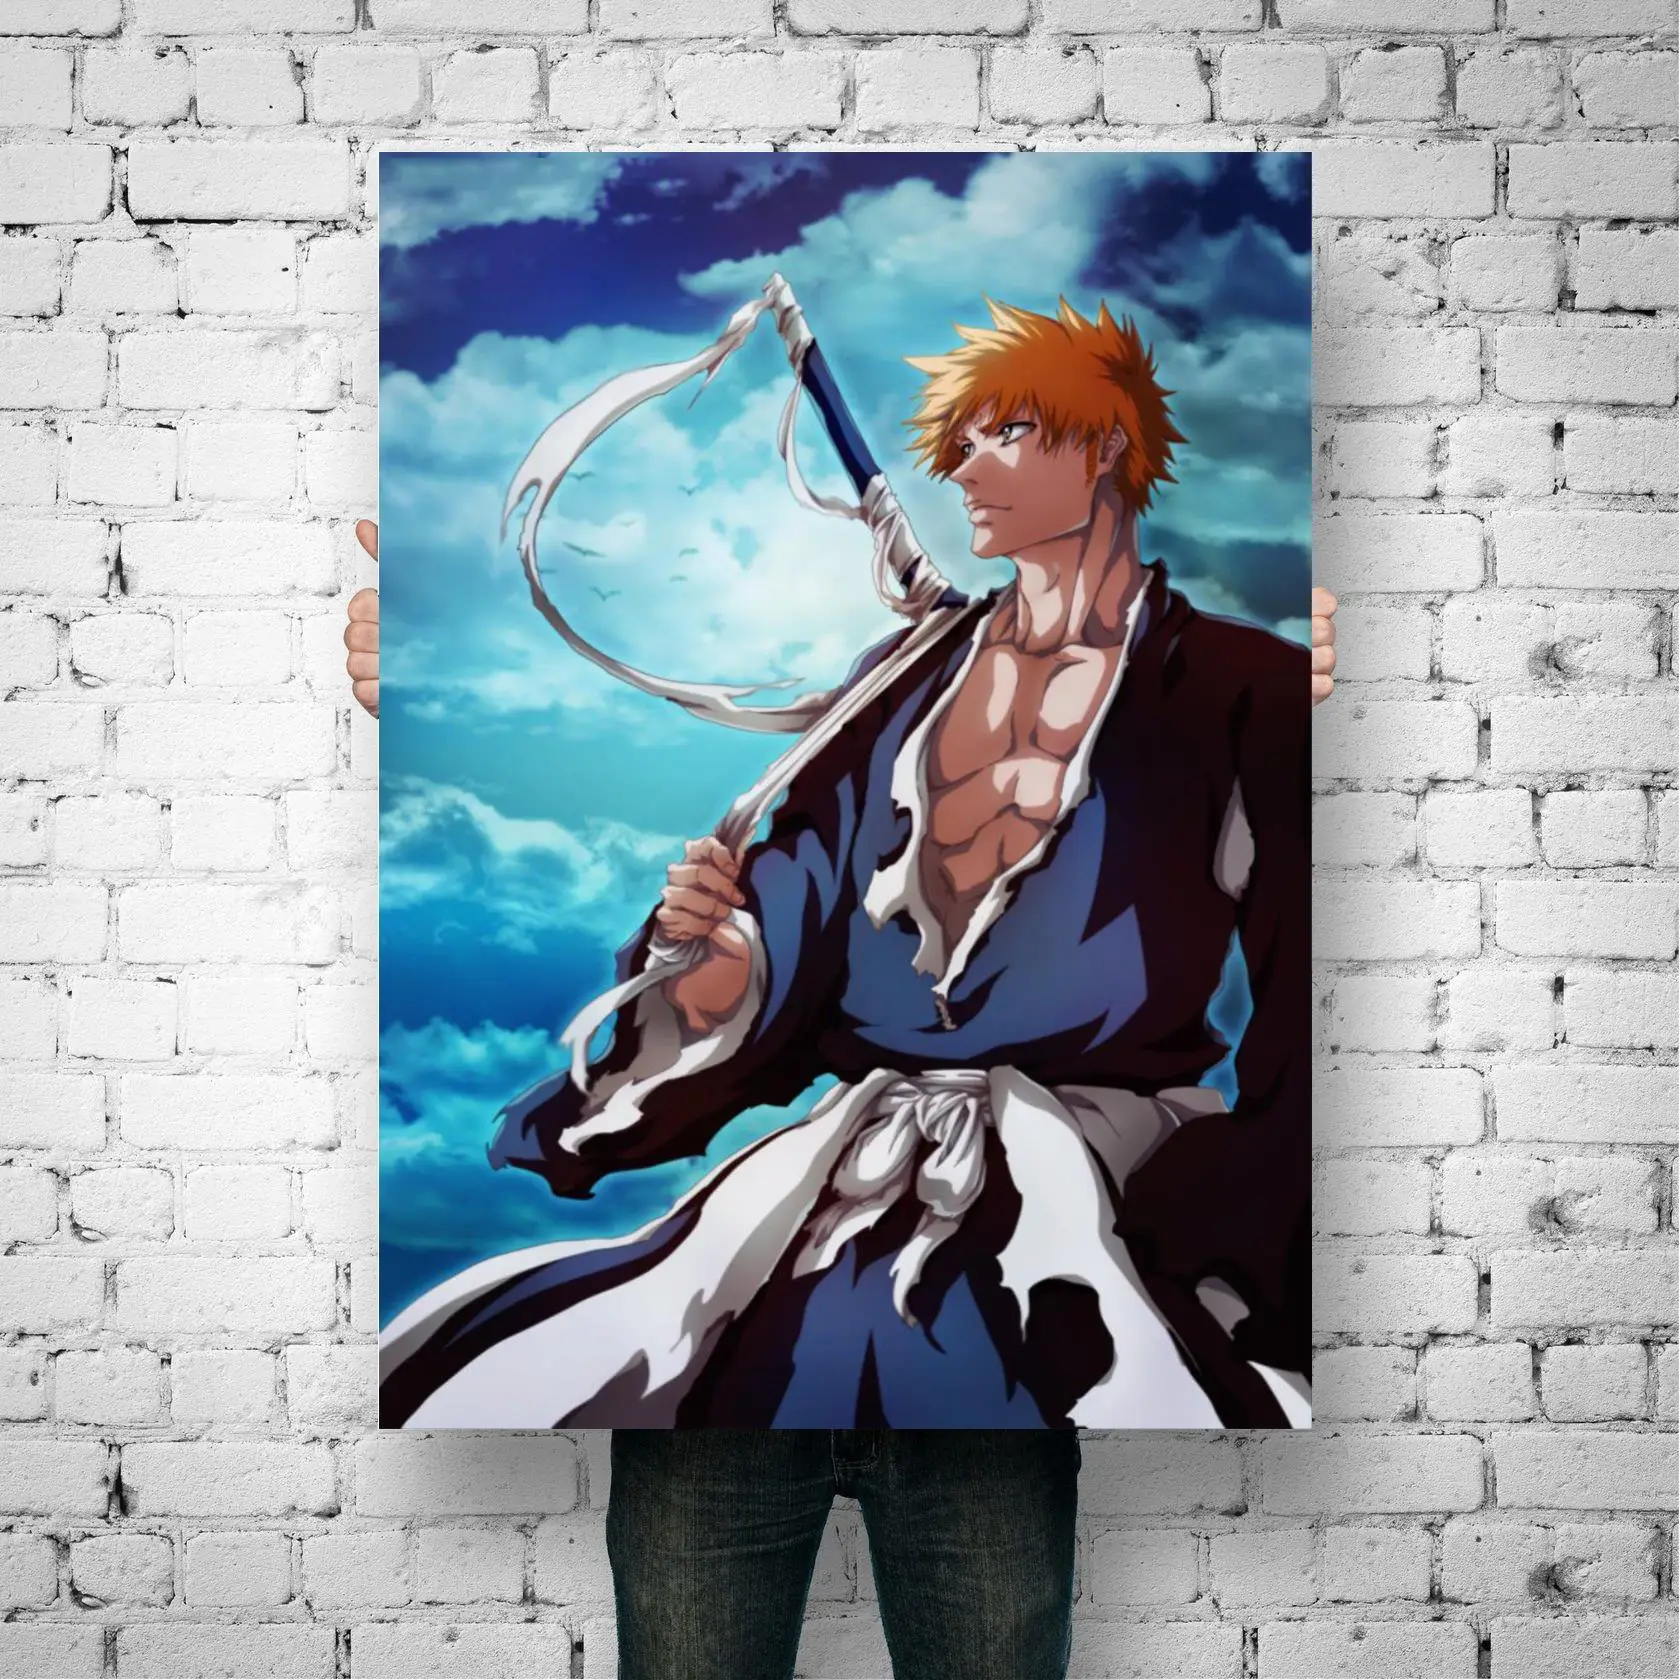 Bleach Anime Wall Art for Sale